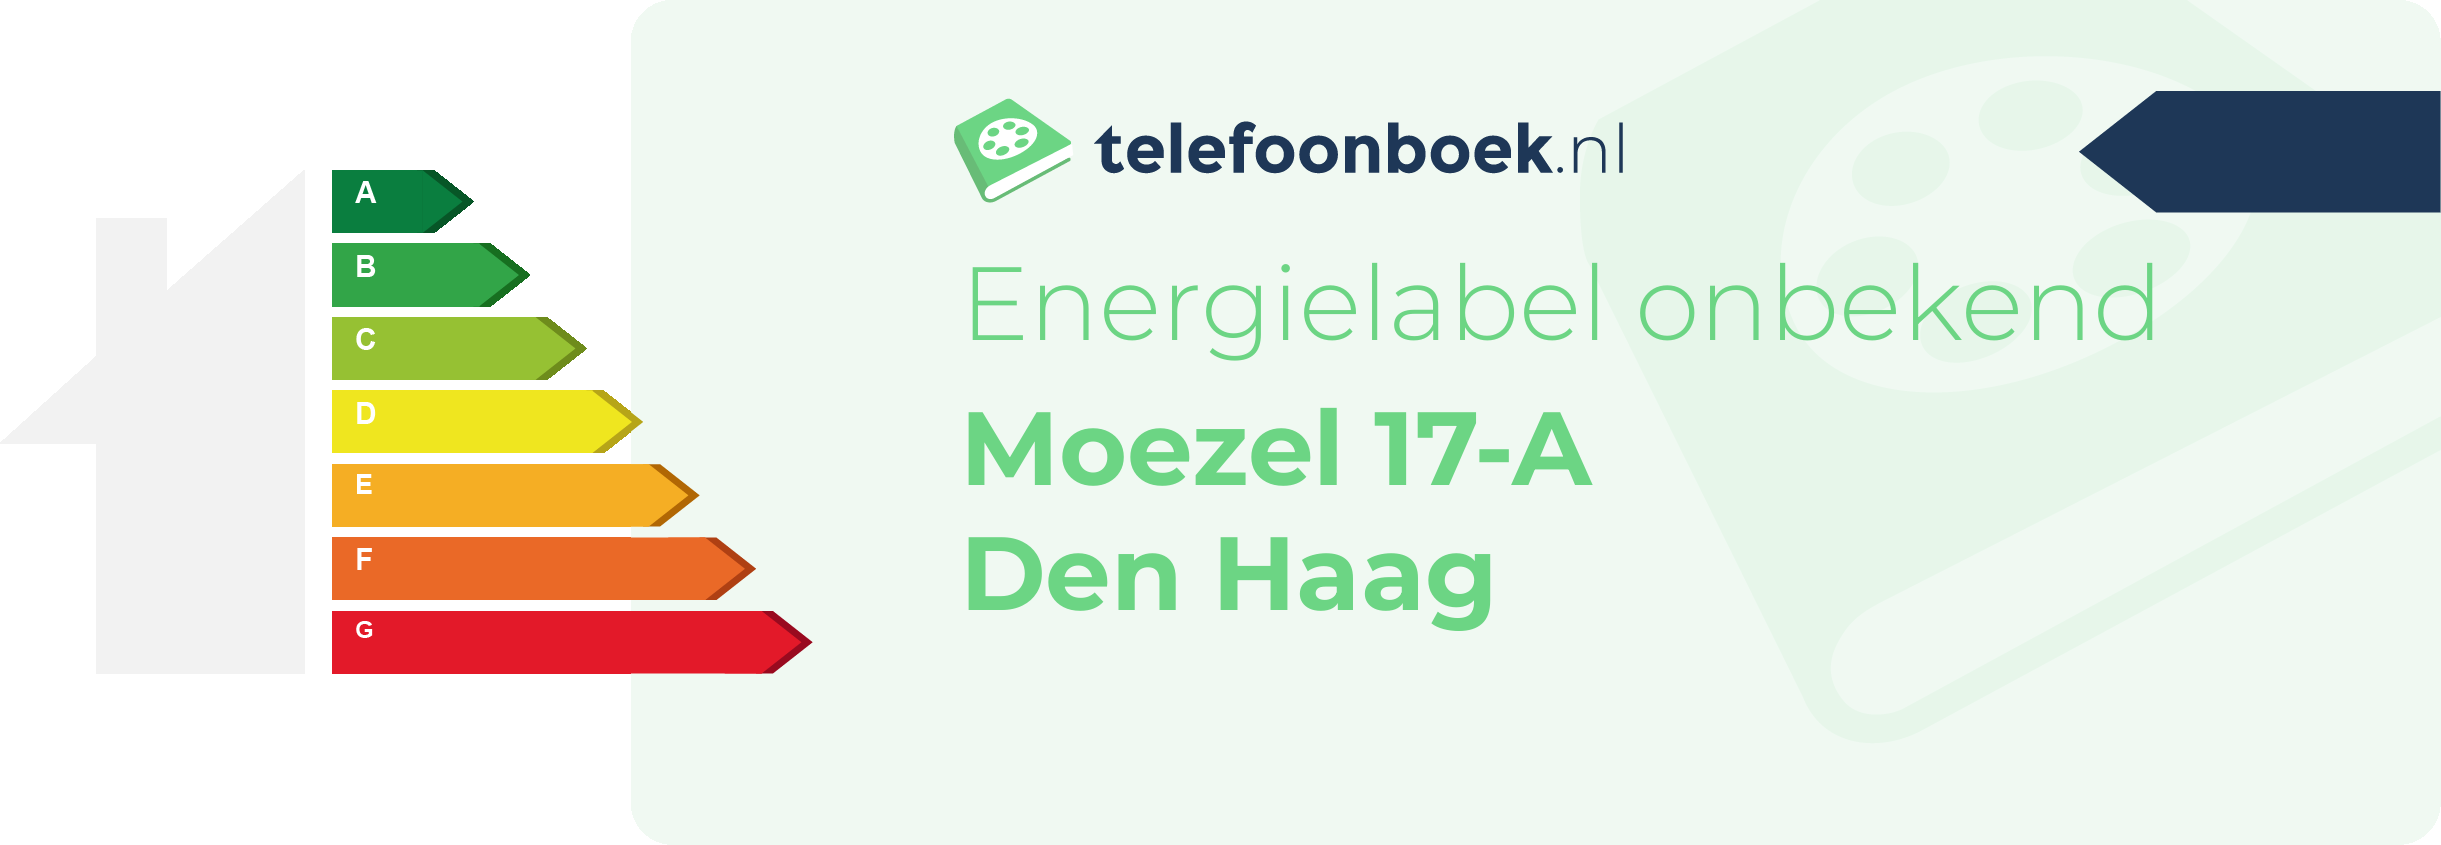 Energielabel Moezel 17-A Den Haag